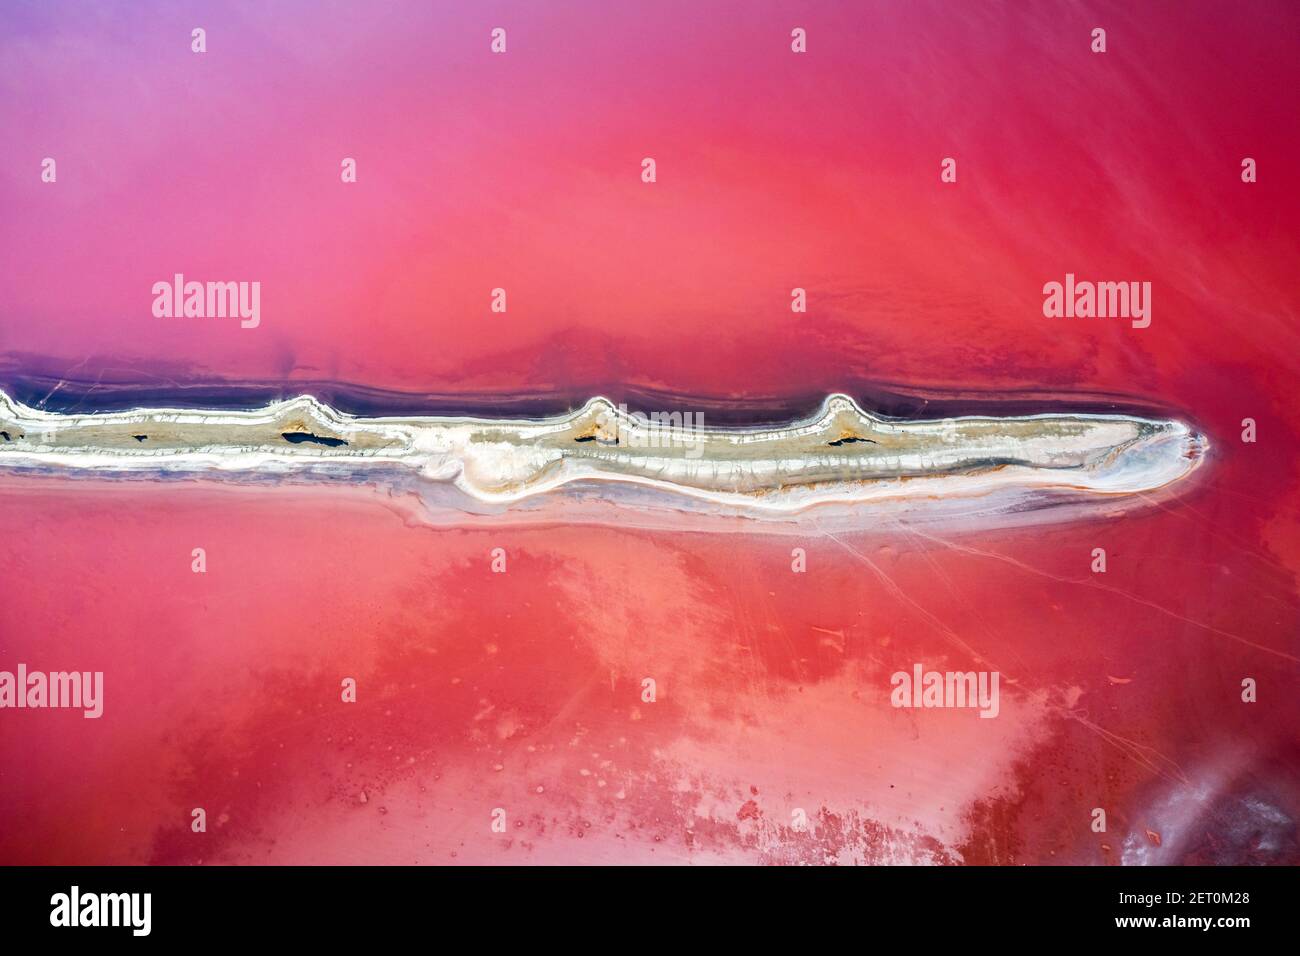 Vue abstraite de l'eau salée du lac rose provenant du drone. Concept de couleur de la nature créative. Arrière-plan de la vue de dessus Banque D'Images